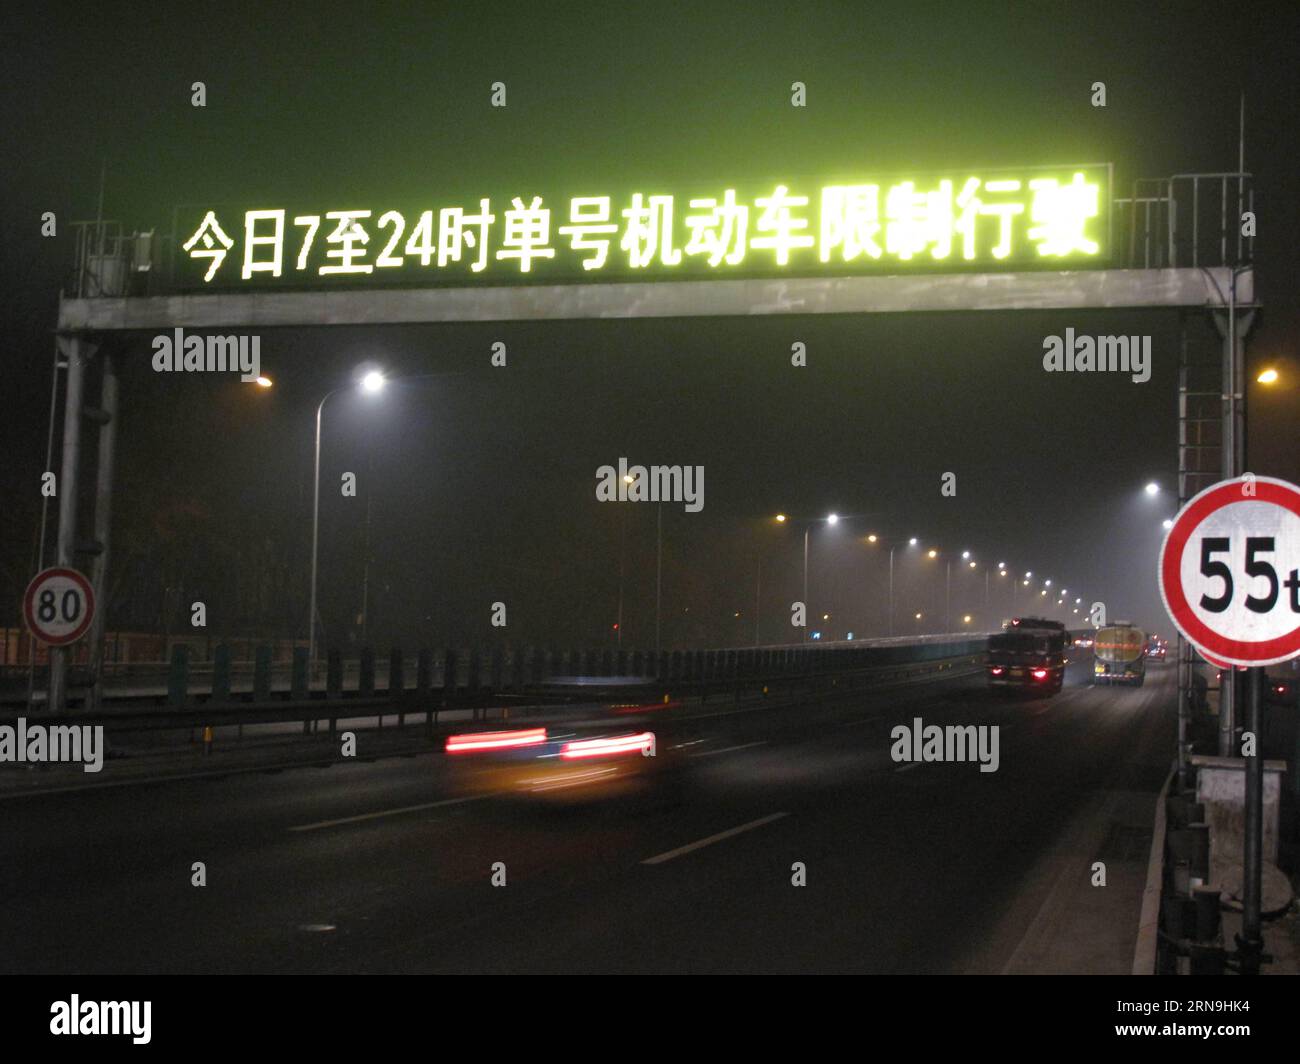 (151208) -- BEIJING, 8 décembre 2015 -- un panneau de signalisation électronique rappelle aux conducteurs d'utiliser leur voiture en alternance, en fonction du nombre pair ou impair de leur plaque d'immatriculation à Beijing, capitale de la Chine, le 8 décembre 2015. Pékin a émis sa première alerte rouge pour la pollution atmosphérique dans le cadre d'un système d'intervention d'urgence à quatre niveaux créé en octobre 2013. L'alerte rouge, le niveau le plus grave, durera de 7 h à midi jeudi. Sous une alerte rouge, le siège de gestion des urgences de la ville a conseillé aux jardins d enfants, aux écoles primaires et secondaires de suspendre les cours, interdit les opérations en plein air sur co Banque D'Images